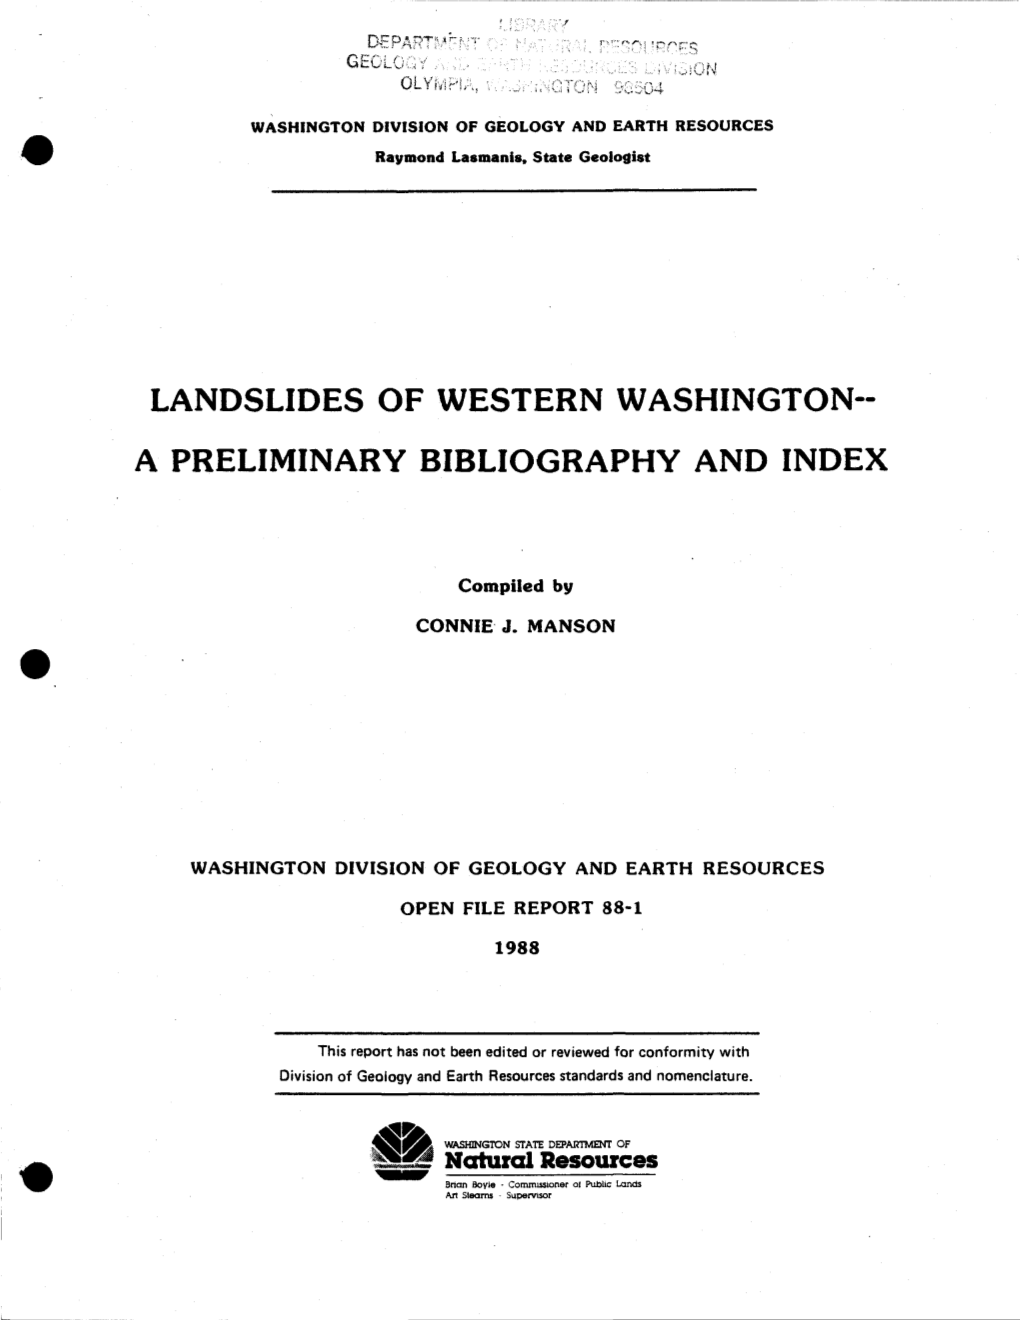 Open File Report 88-1: Landslides of Western Washington—A